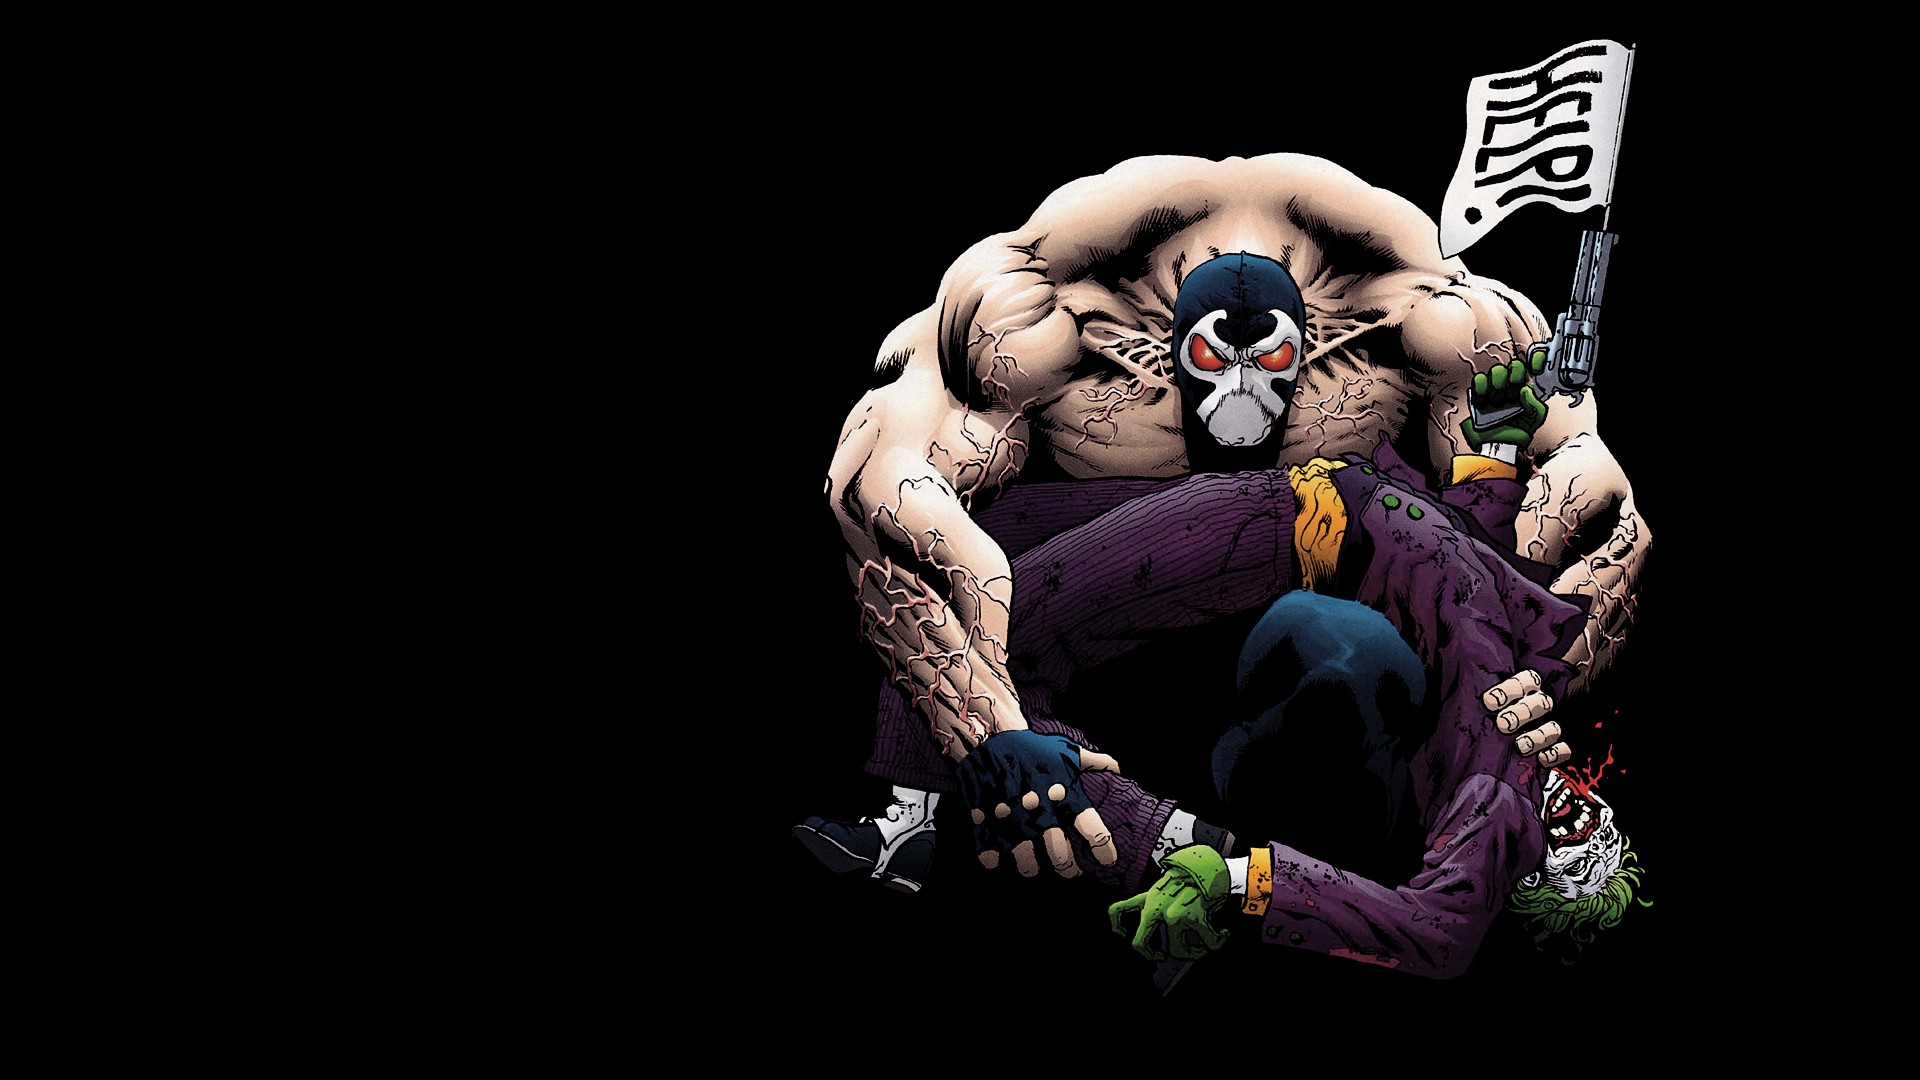 Joker Wallpaper Image